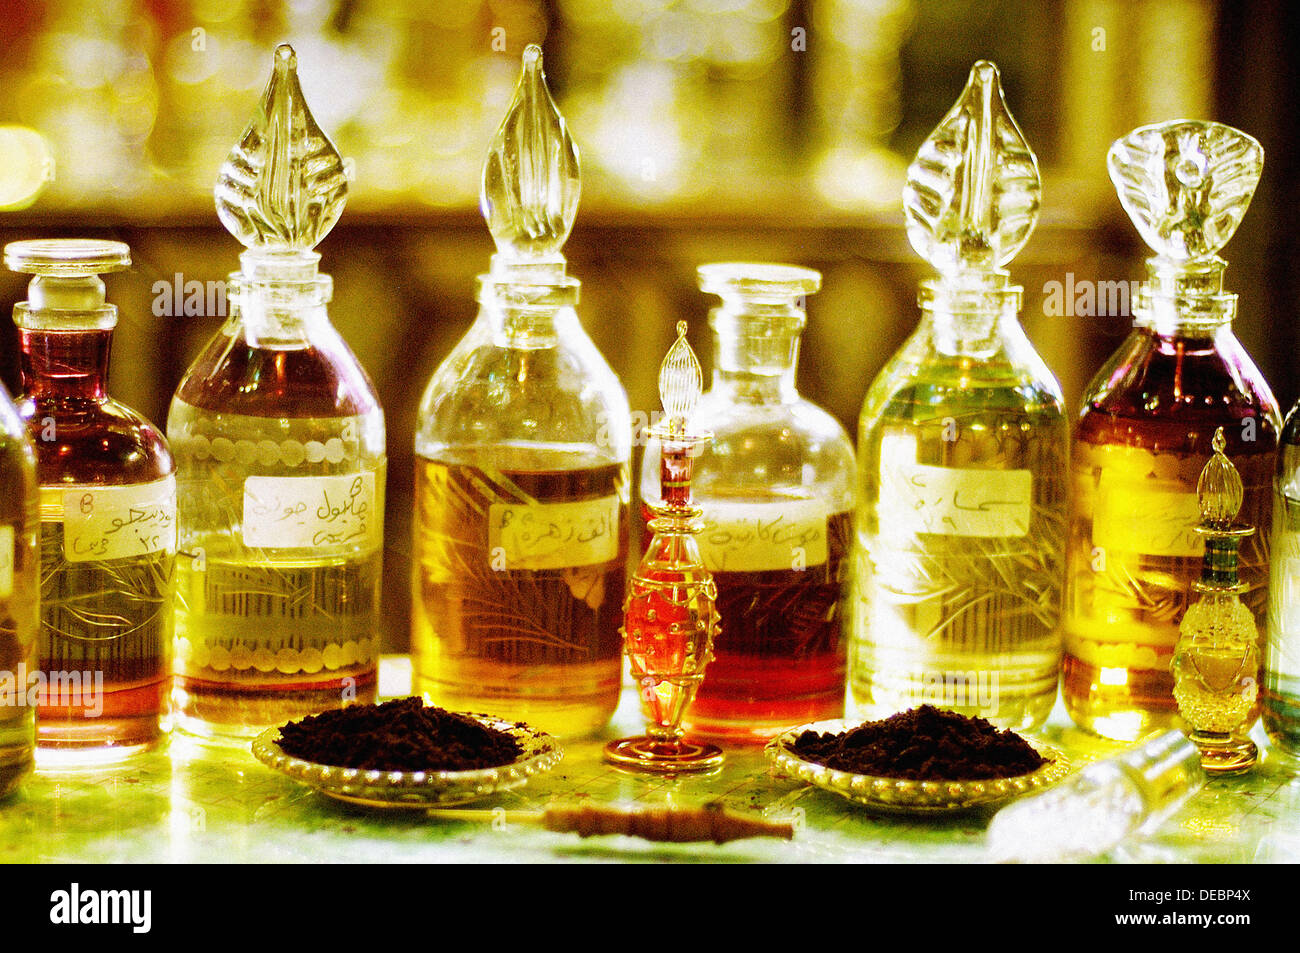 Perfumes egypt immagini e fotografie stock ad alta risoluzione - Alamy